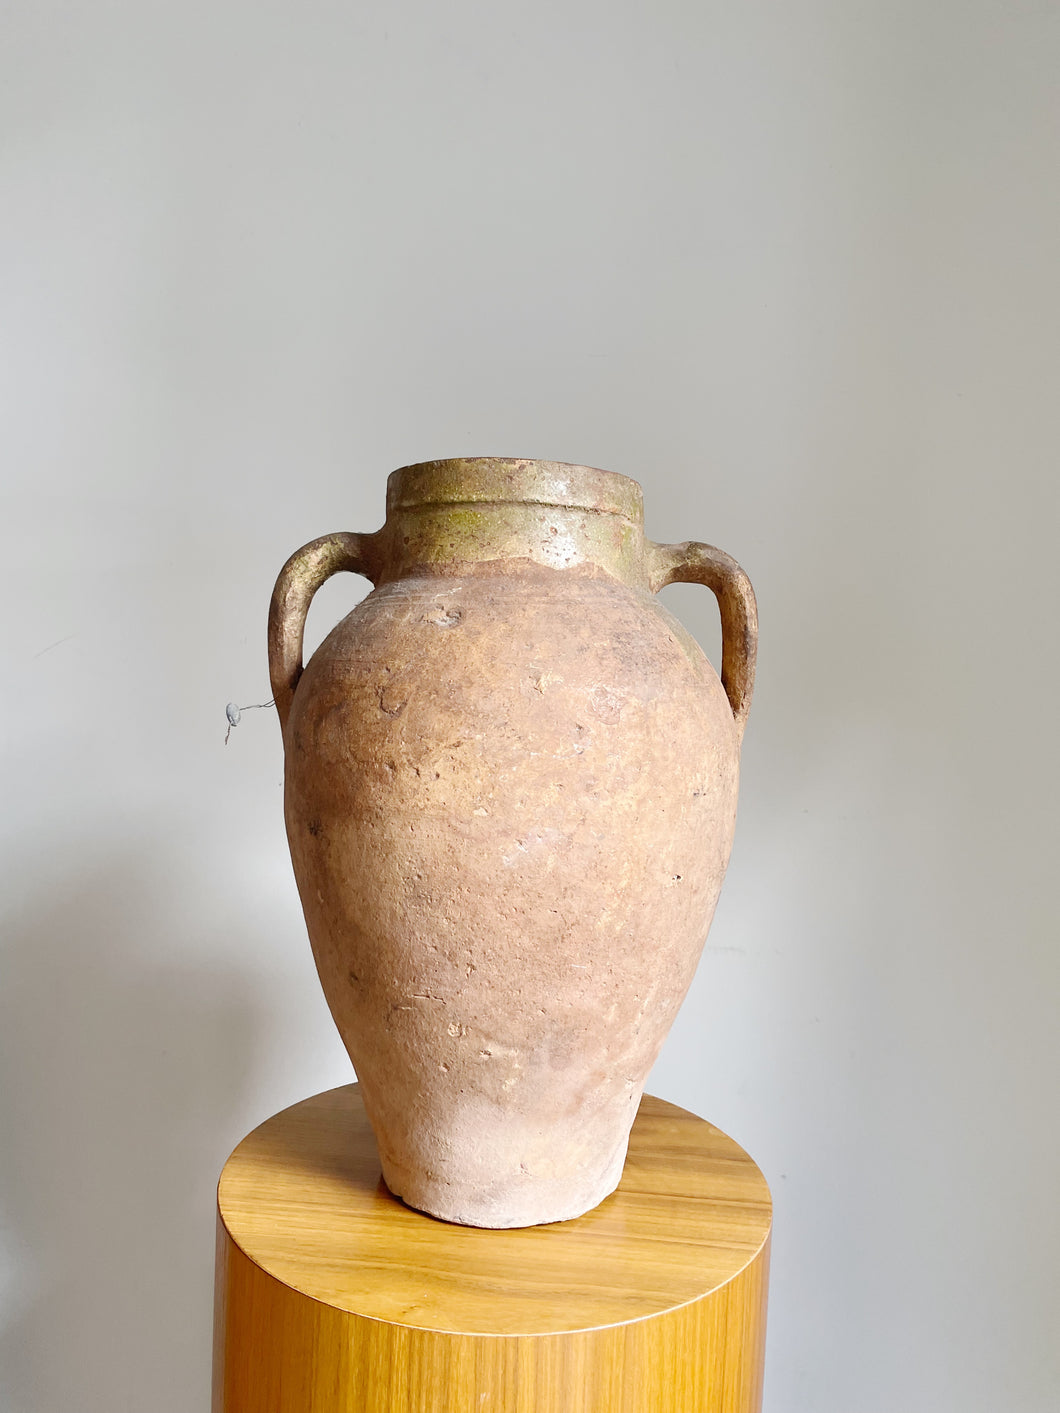 Vintage Primitive Capri Terracotta Olive Jar Vessel // Vase